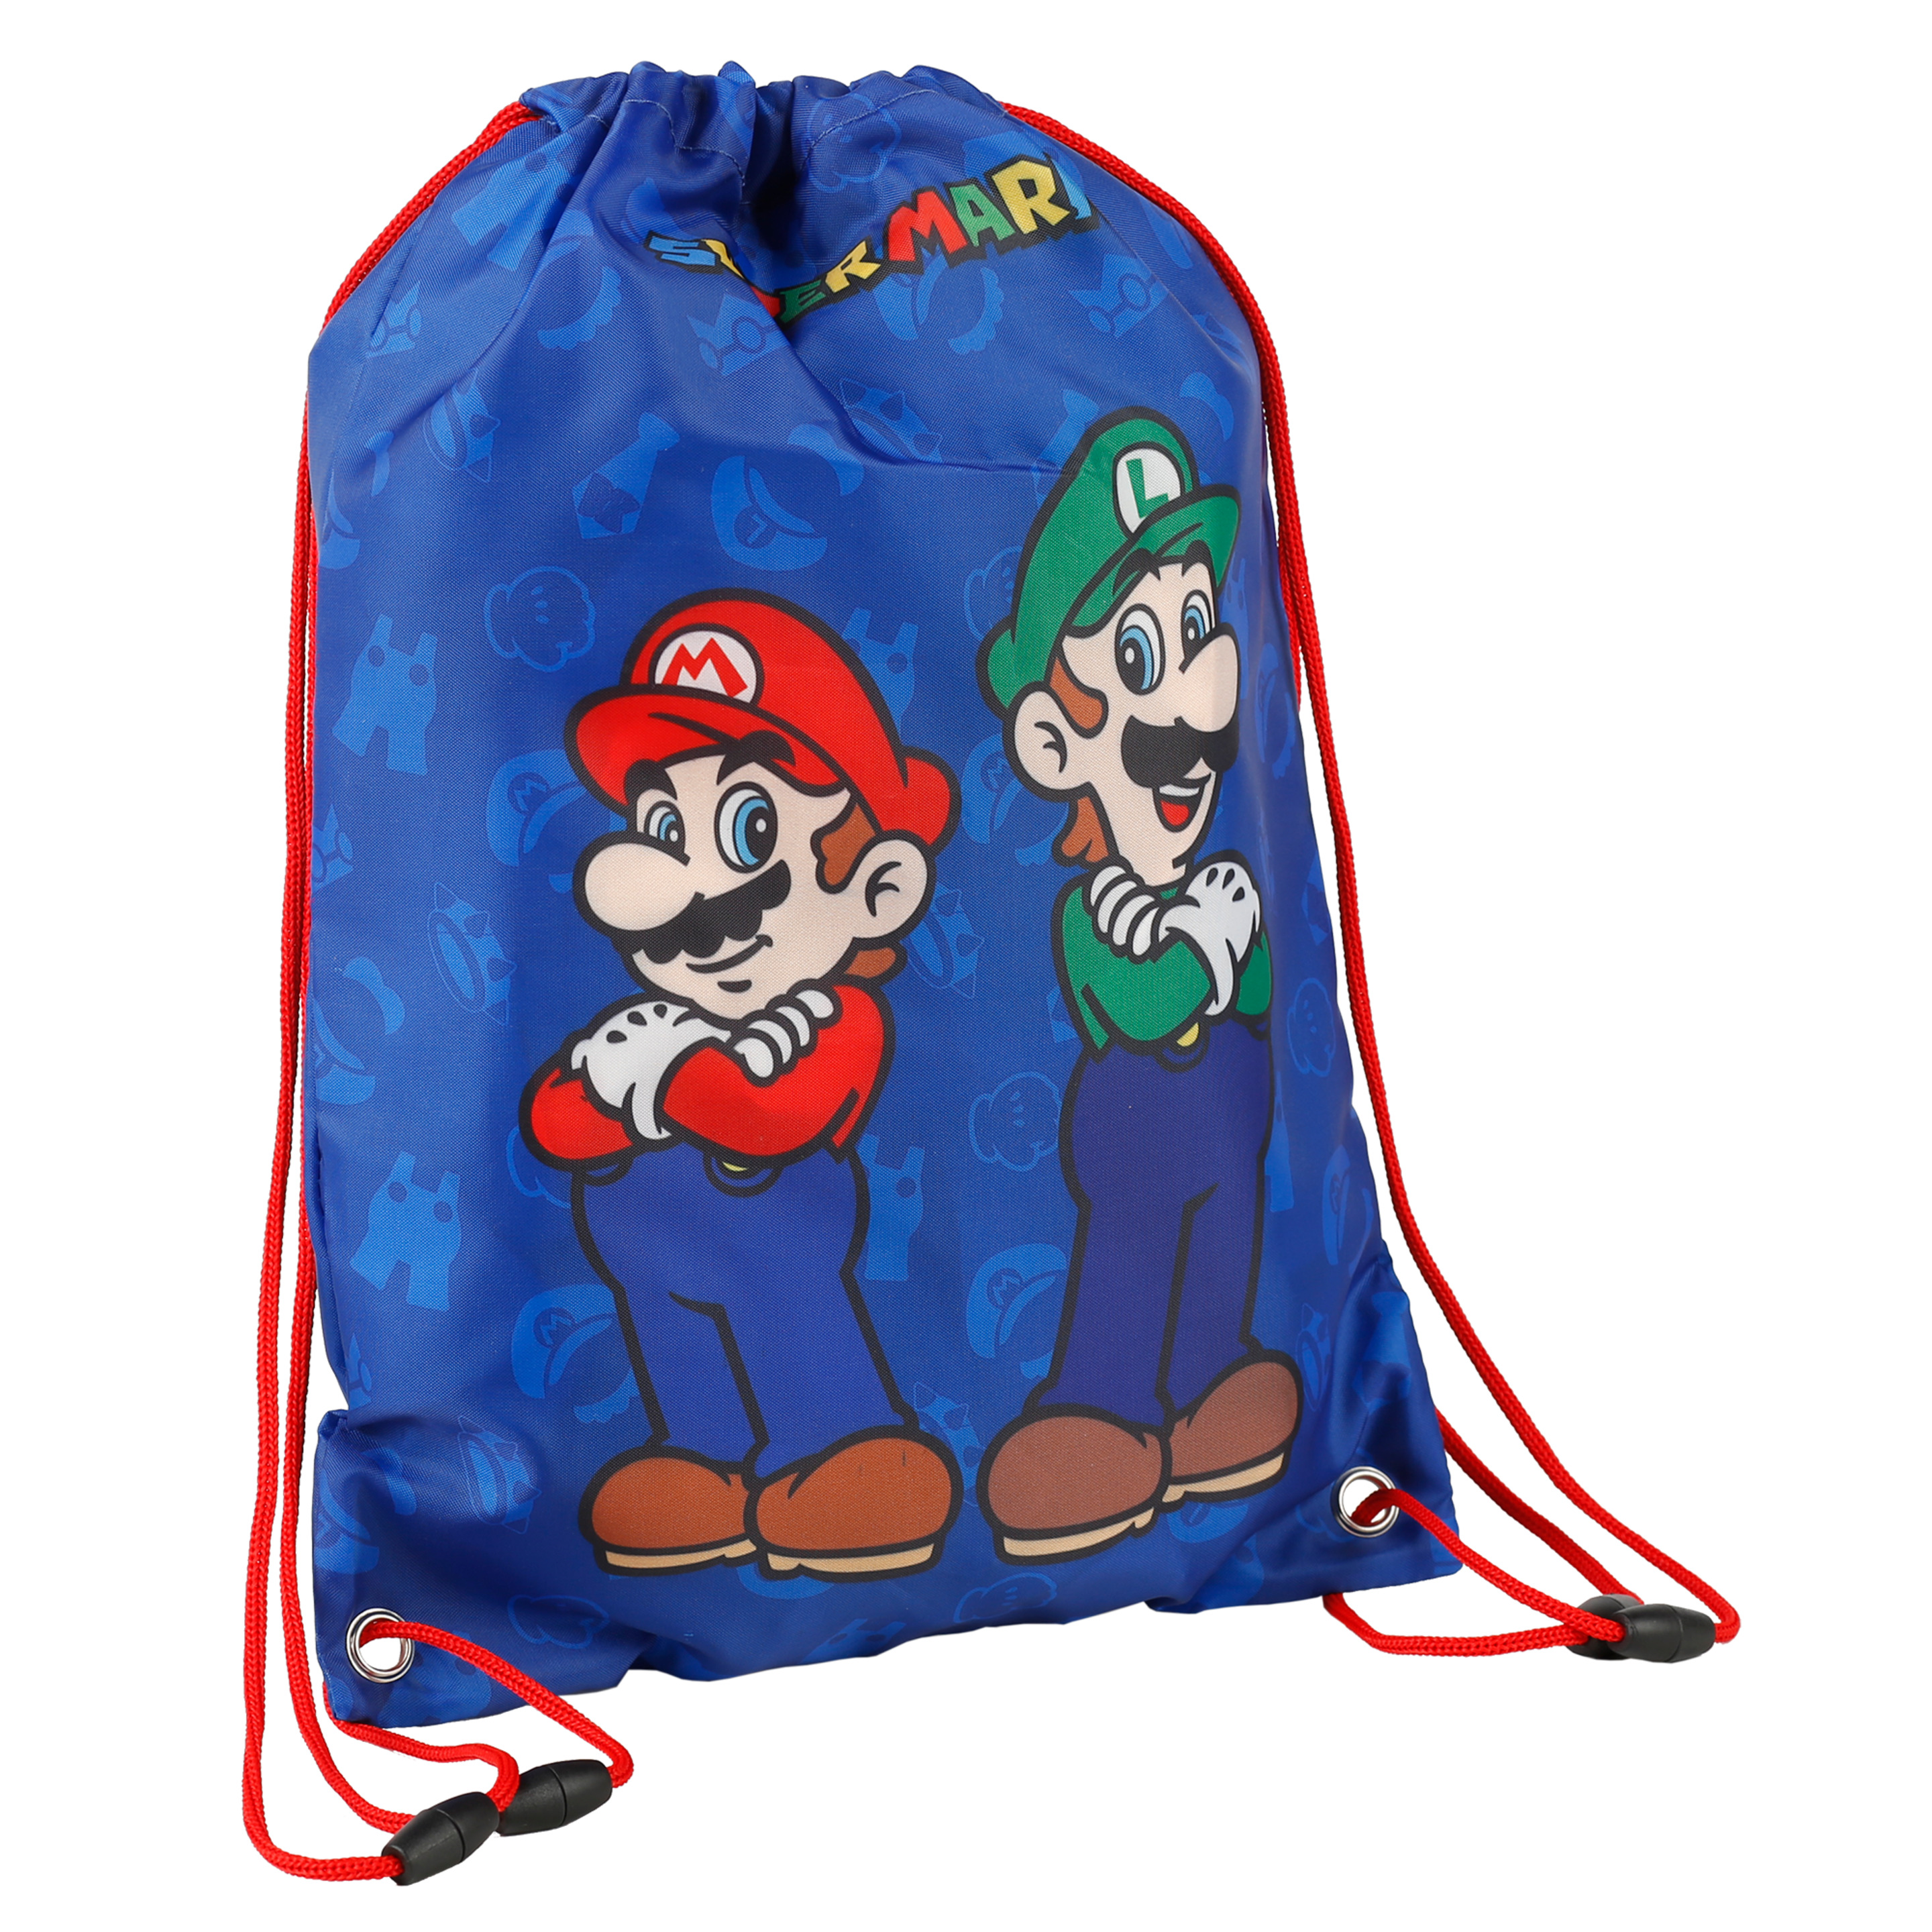 Supermario Mario Y Luigi Saquito - azul - 